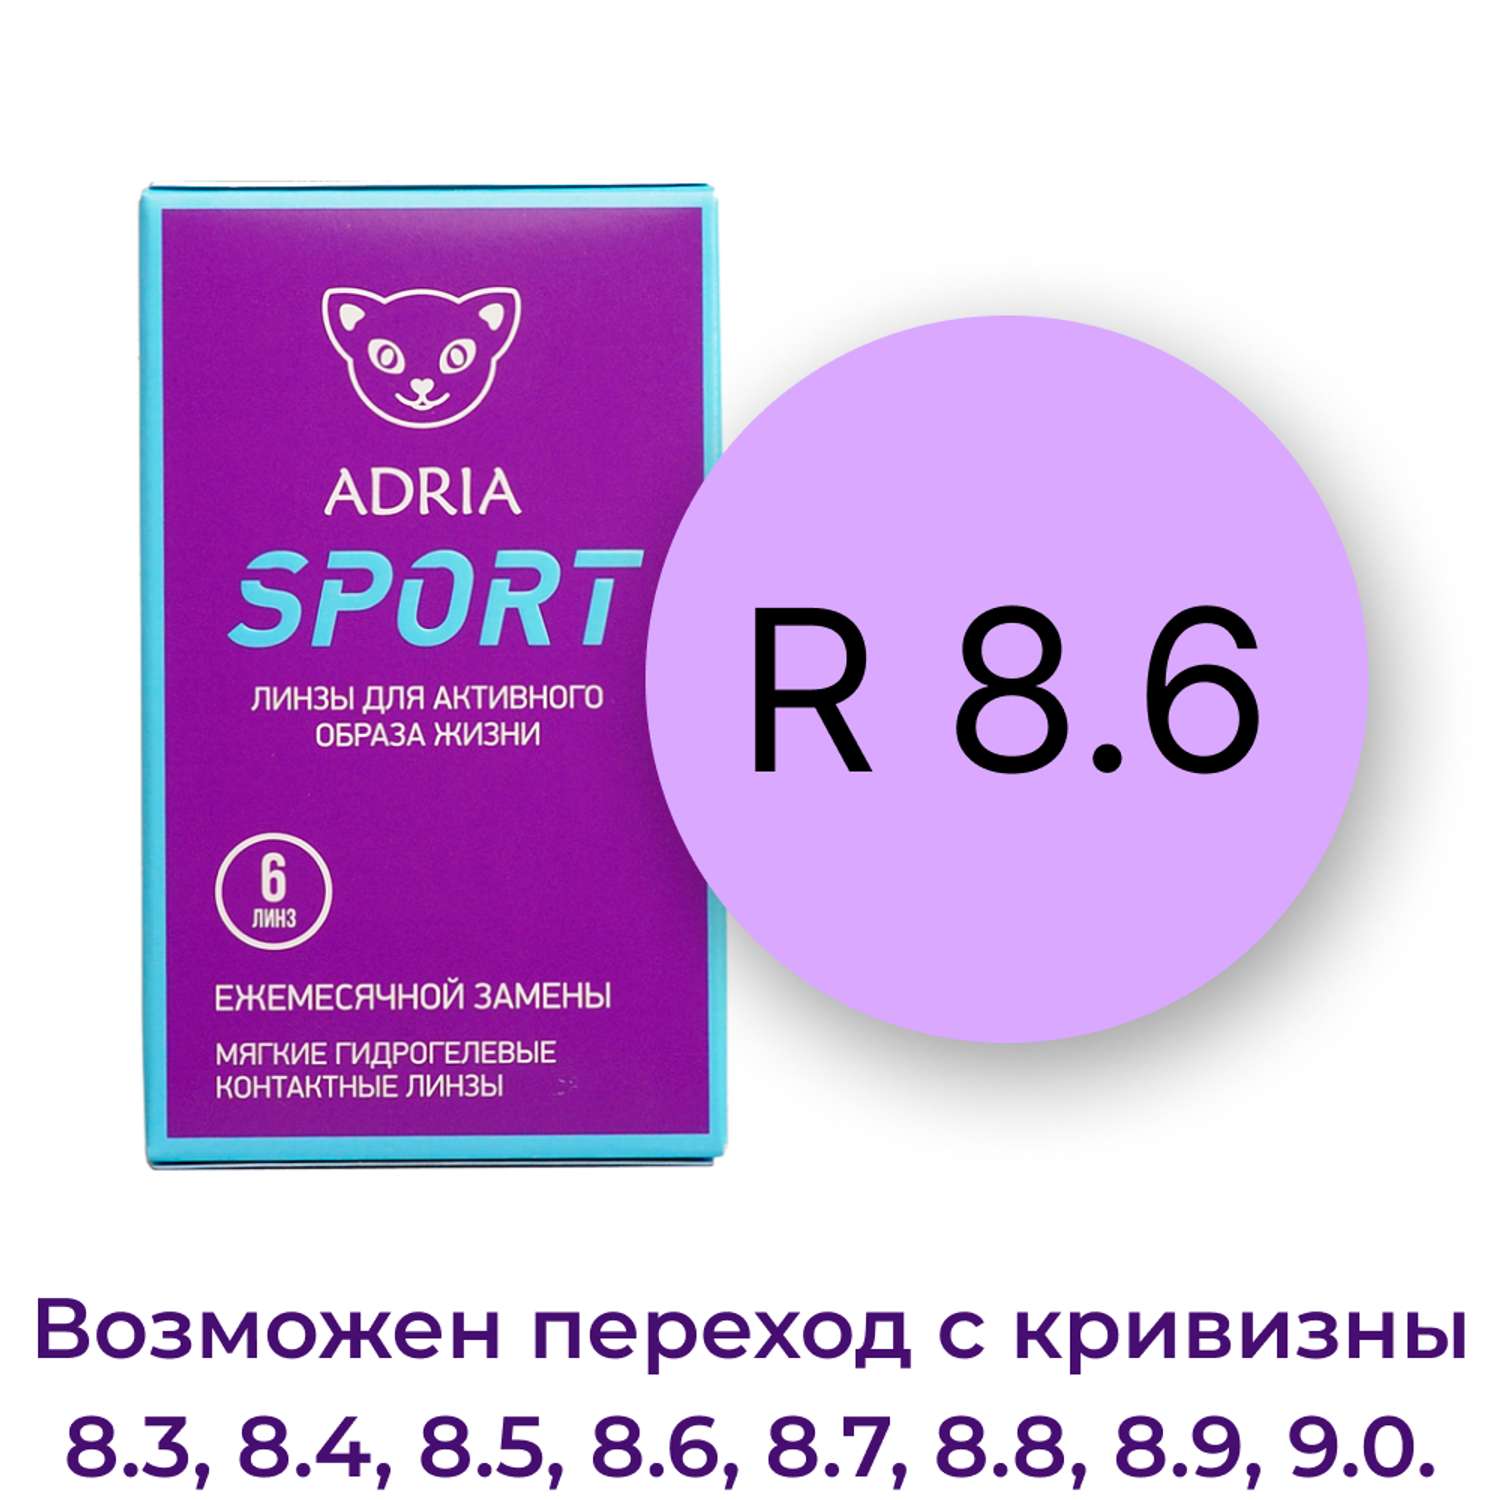 Контактные линзы ADRIA Sport 6 линз R 8.6 -1.50 - фото 3